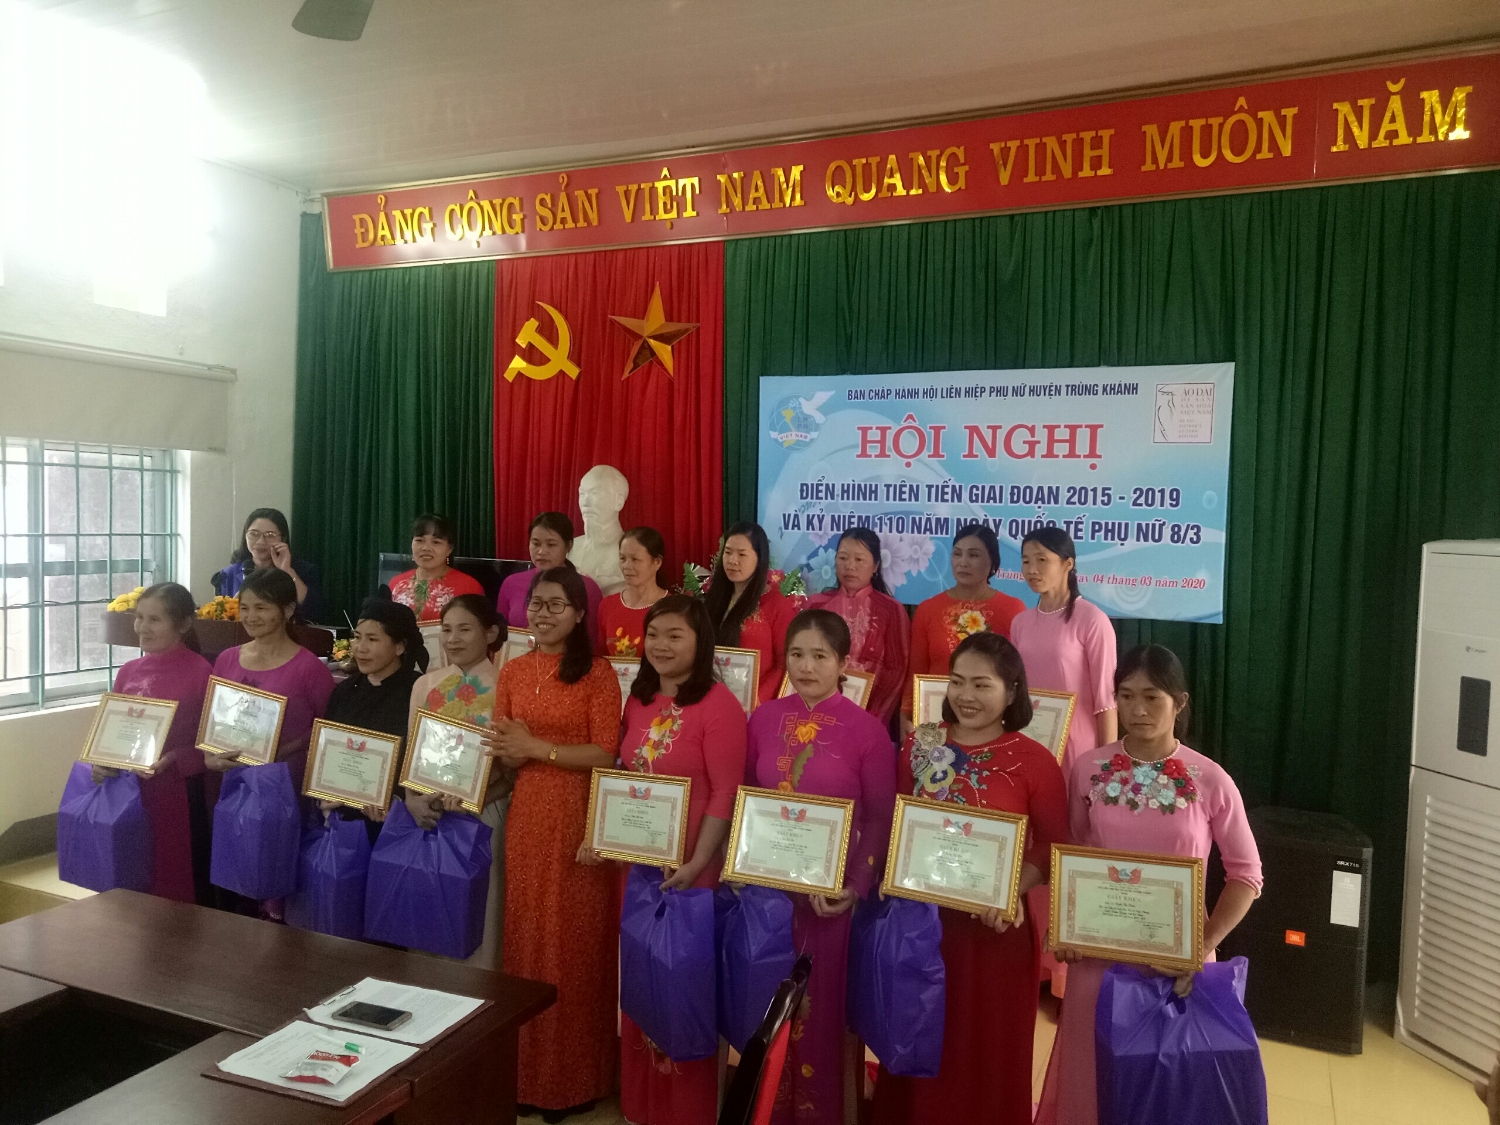 Hội LHPN huyện Trùng Khánh tổ chức  Hội nghị điển hình tiên tiến giai đoạn 2015 - 2020